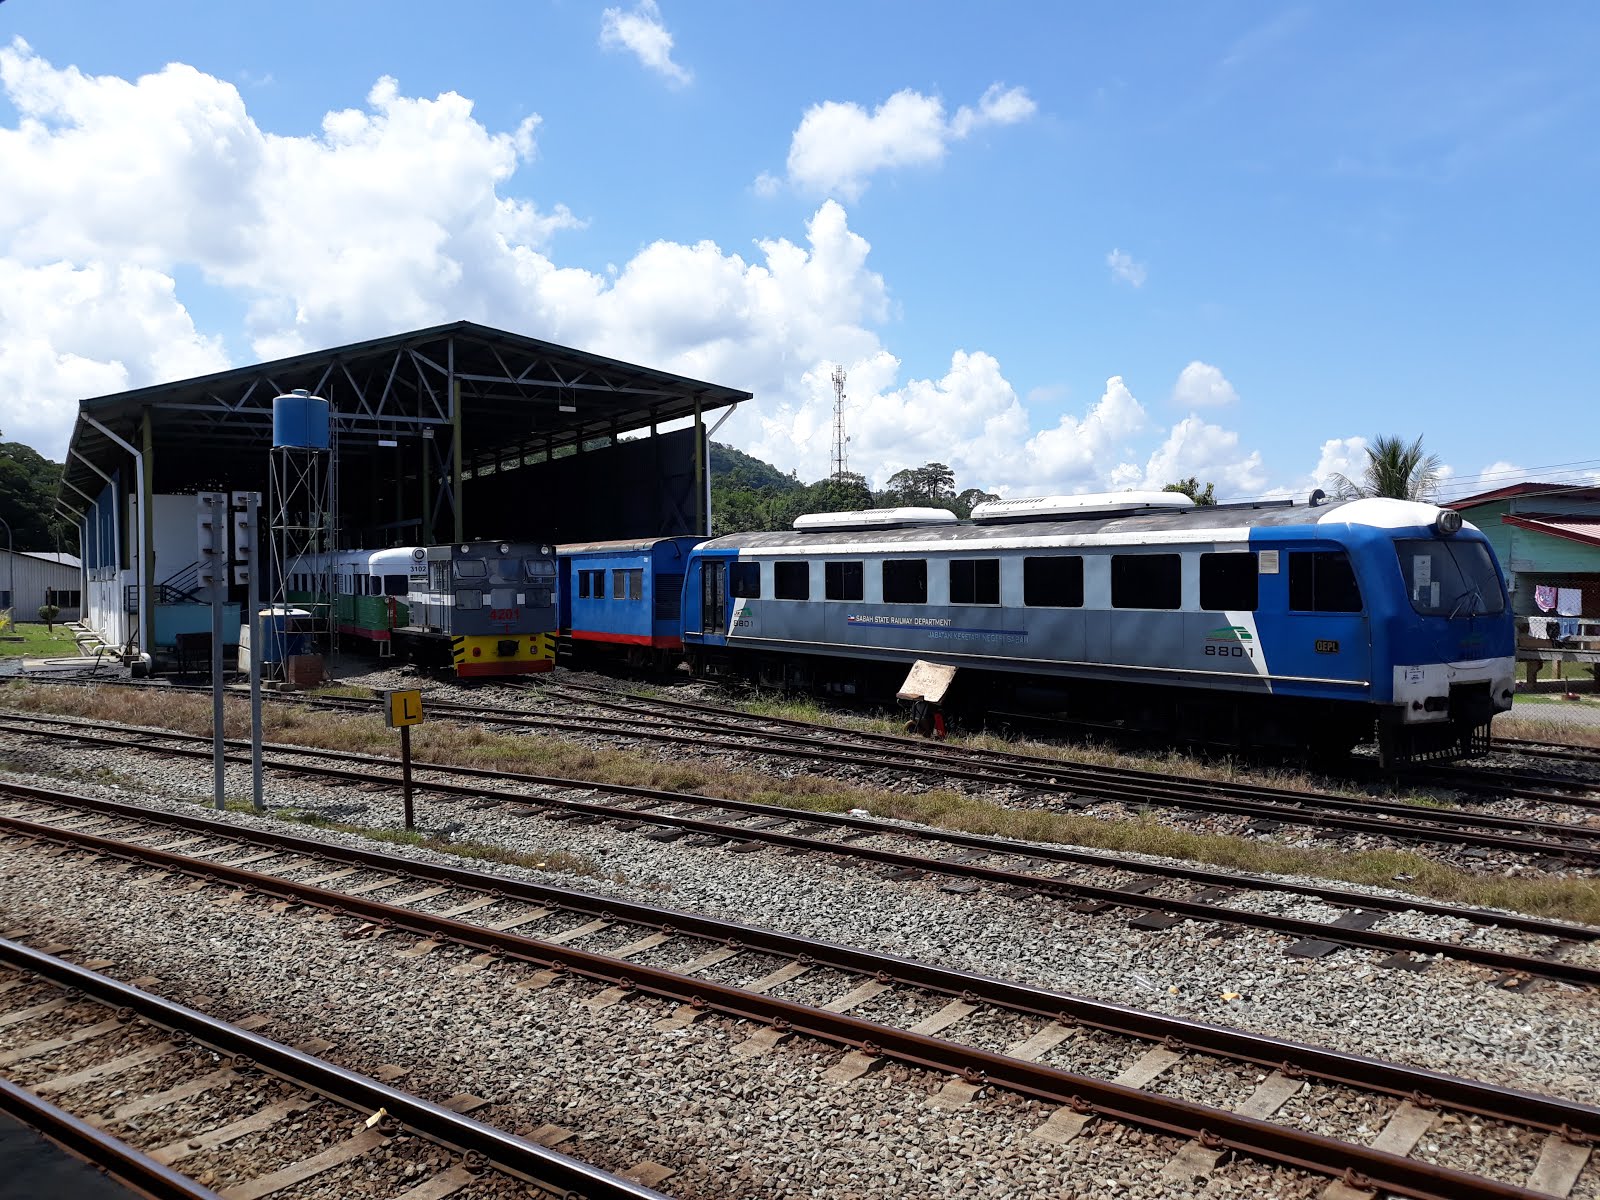 Sabah State Railway: Tenom to Tanjung Aru (Kota Kinabalu) by train